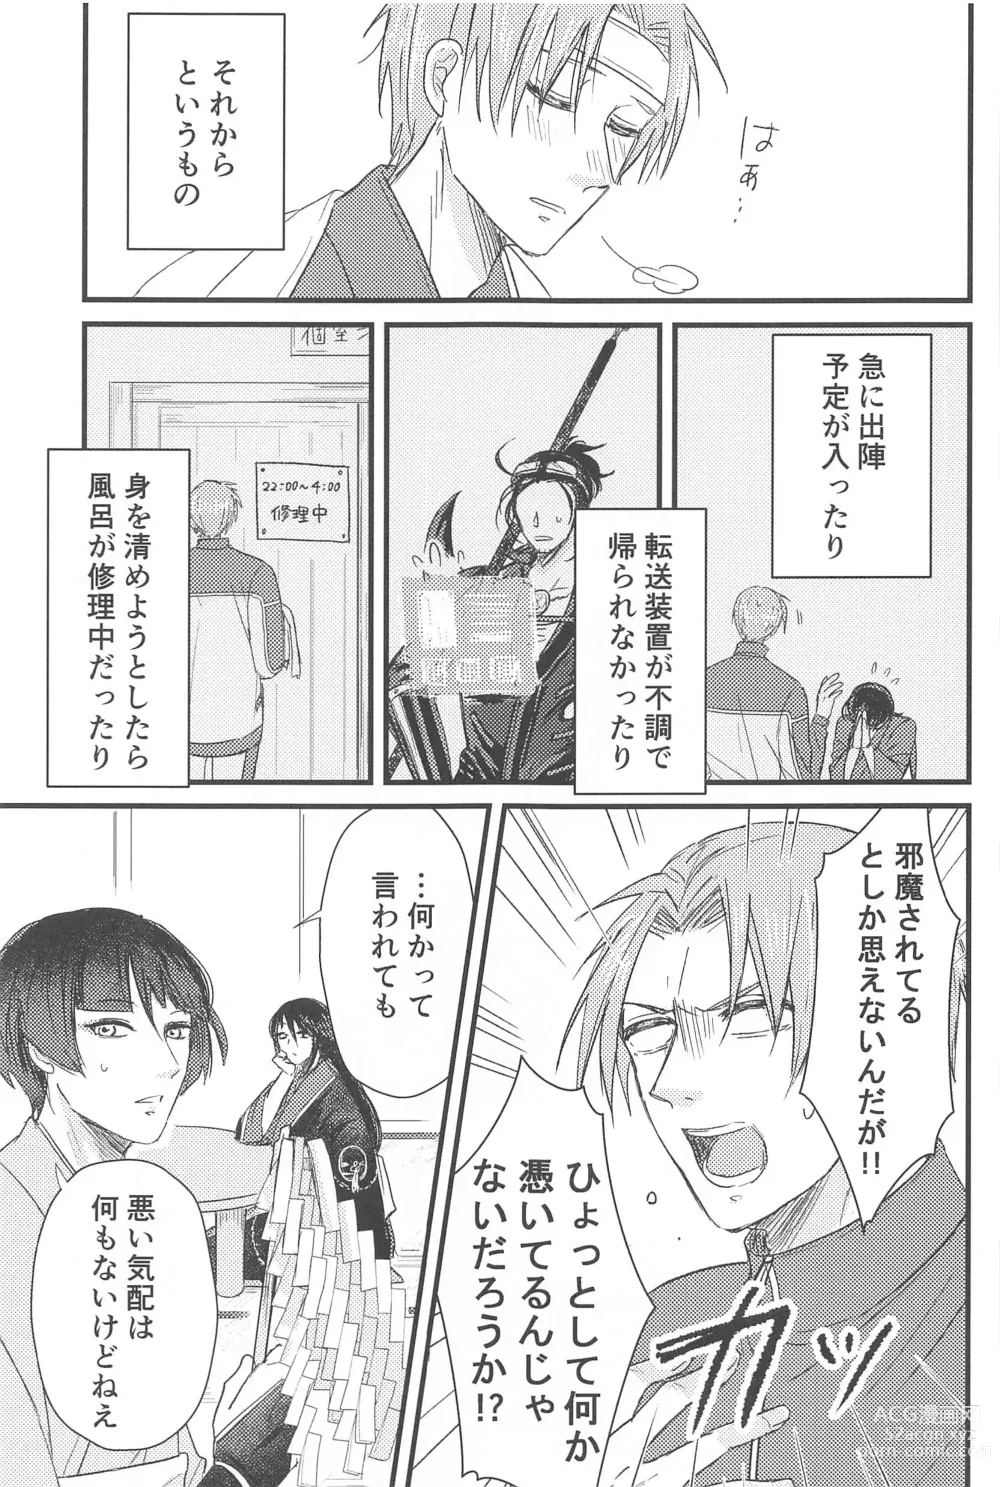 Page 6 of doujinshi Hatsuyo ni Tsugu